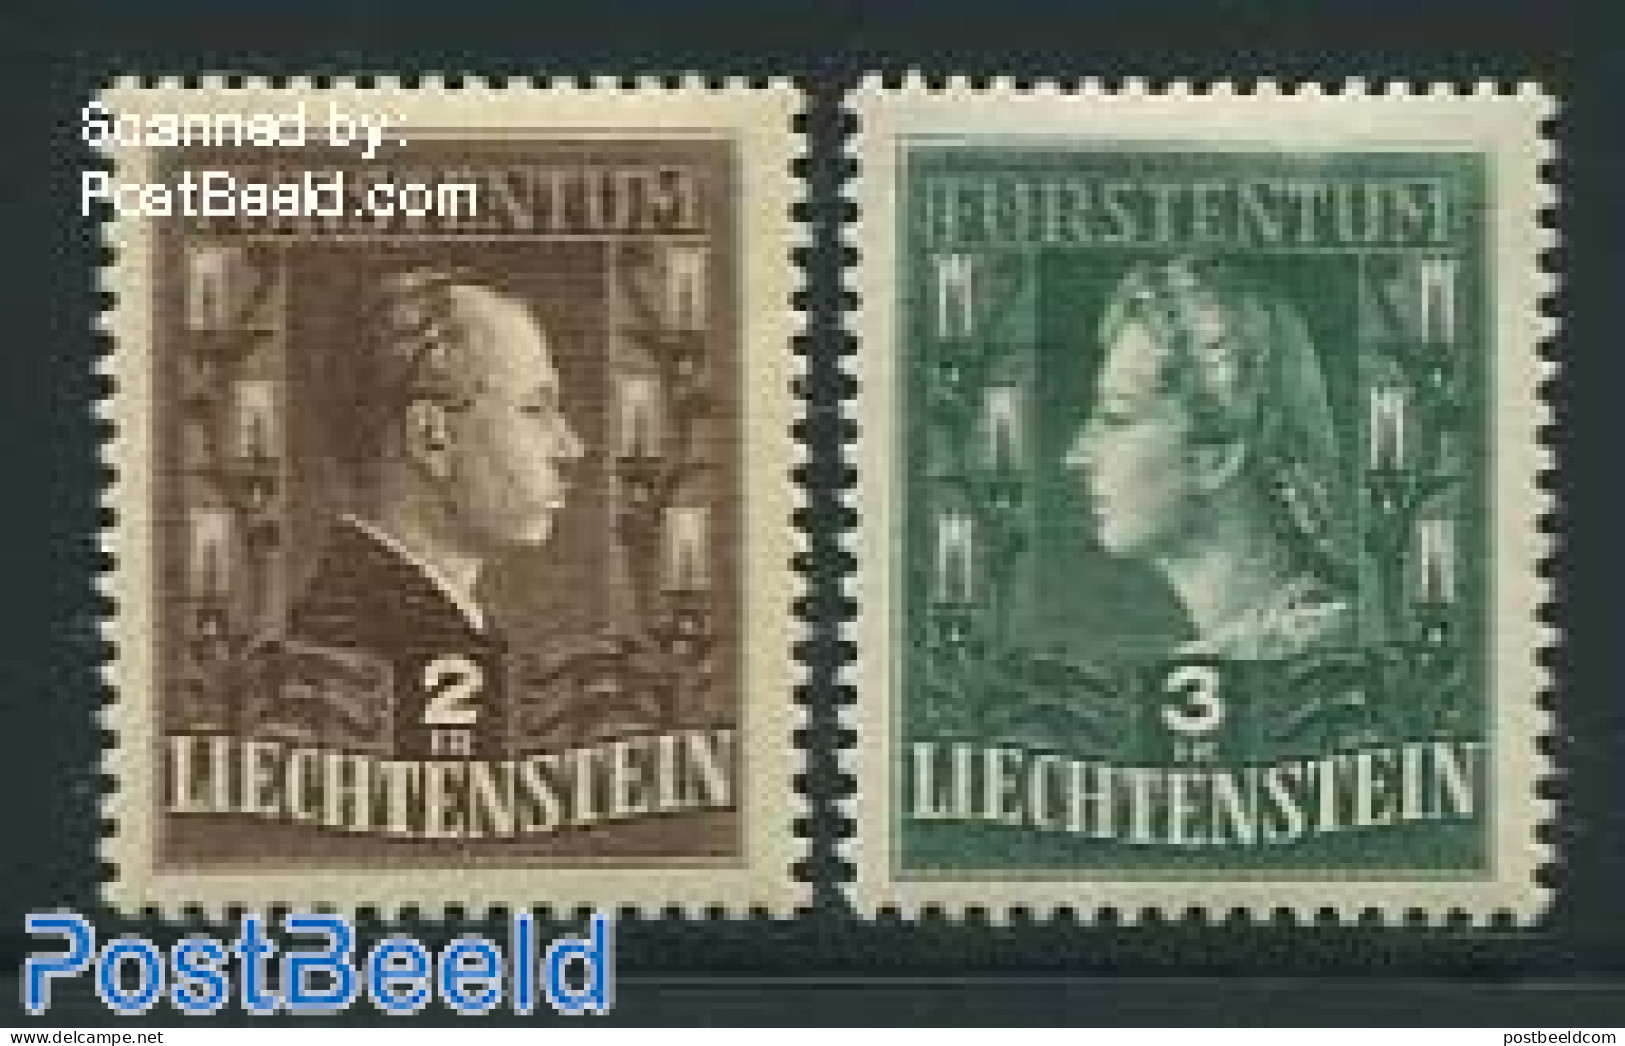 Liechtenstein 1944 Definitives 2v, Mint NH, History - Kings & Queens (Royalty) - Neufs